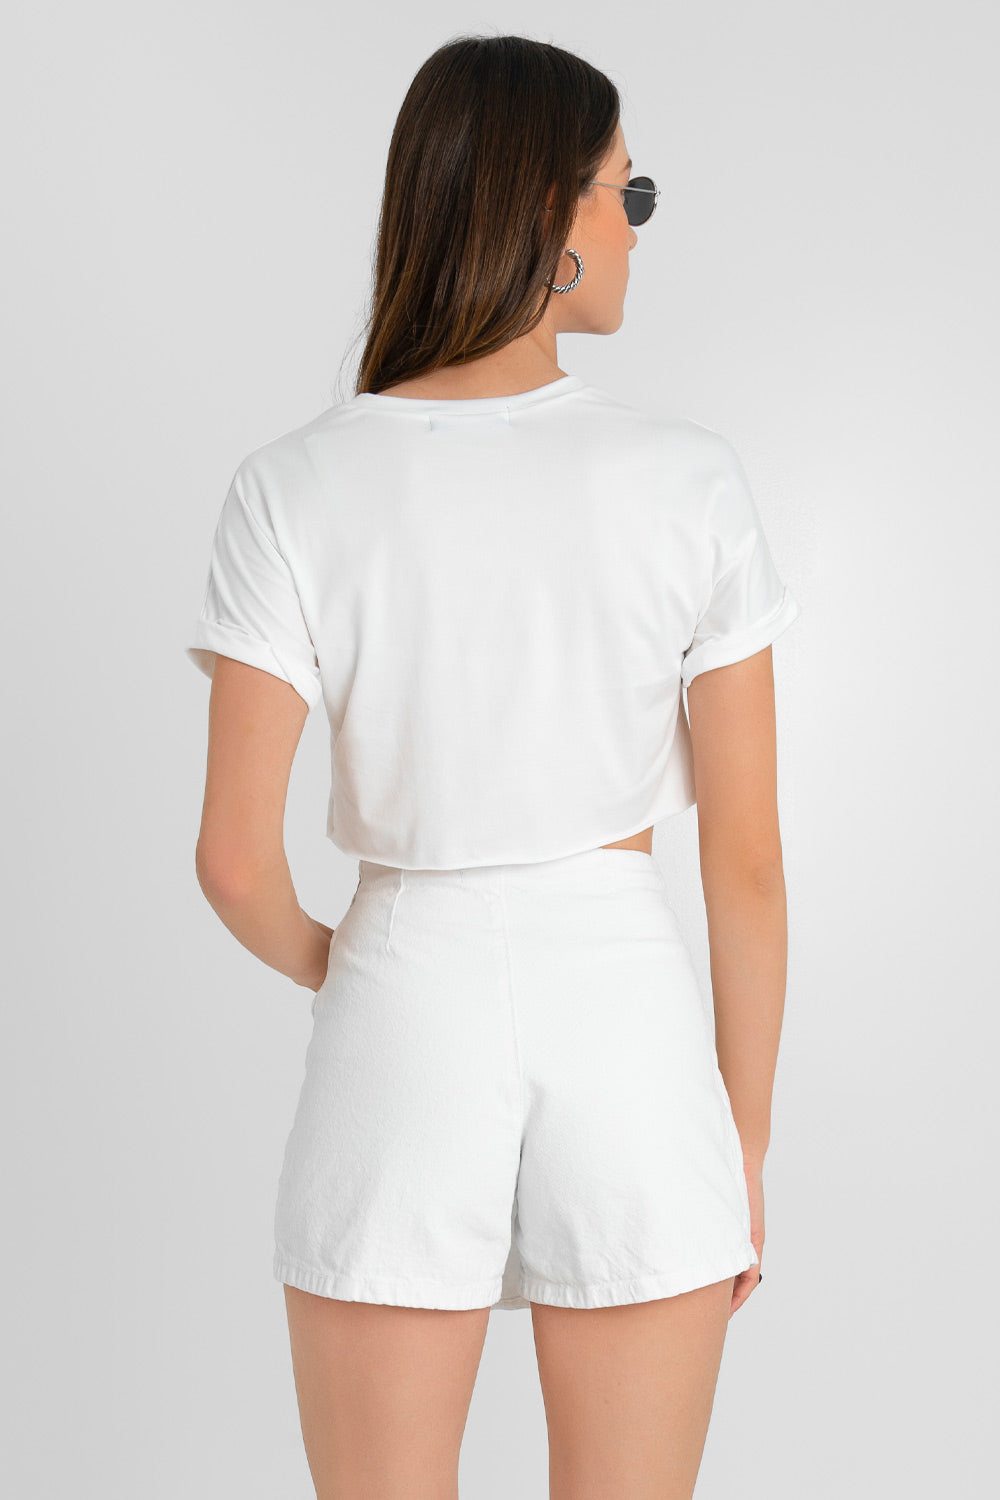 Falda short corto cruzado de denim, corte en a, cintura alta, cortes decorativos con abertura y cierre frontal con botón en contraste.